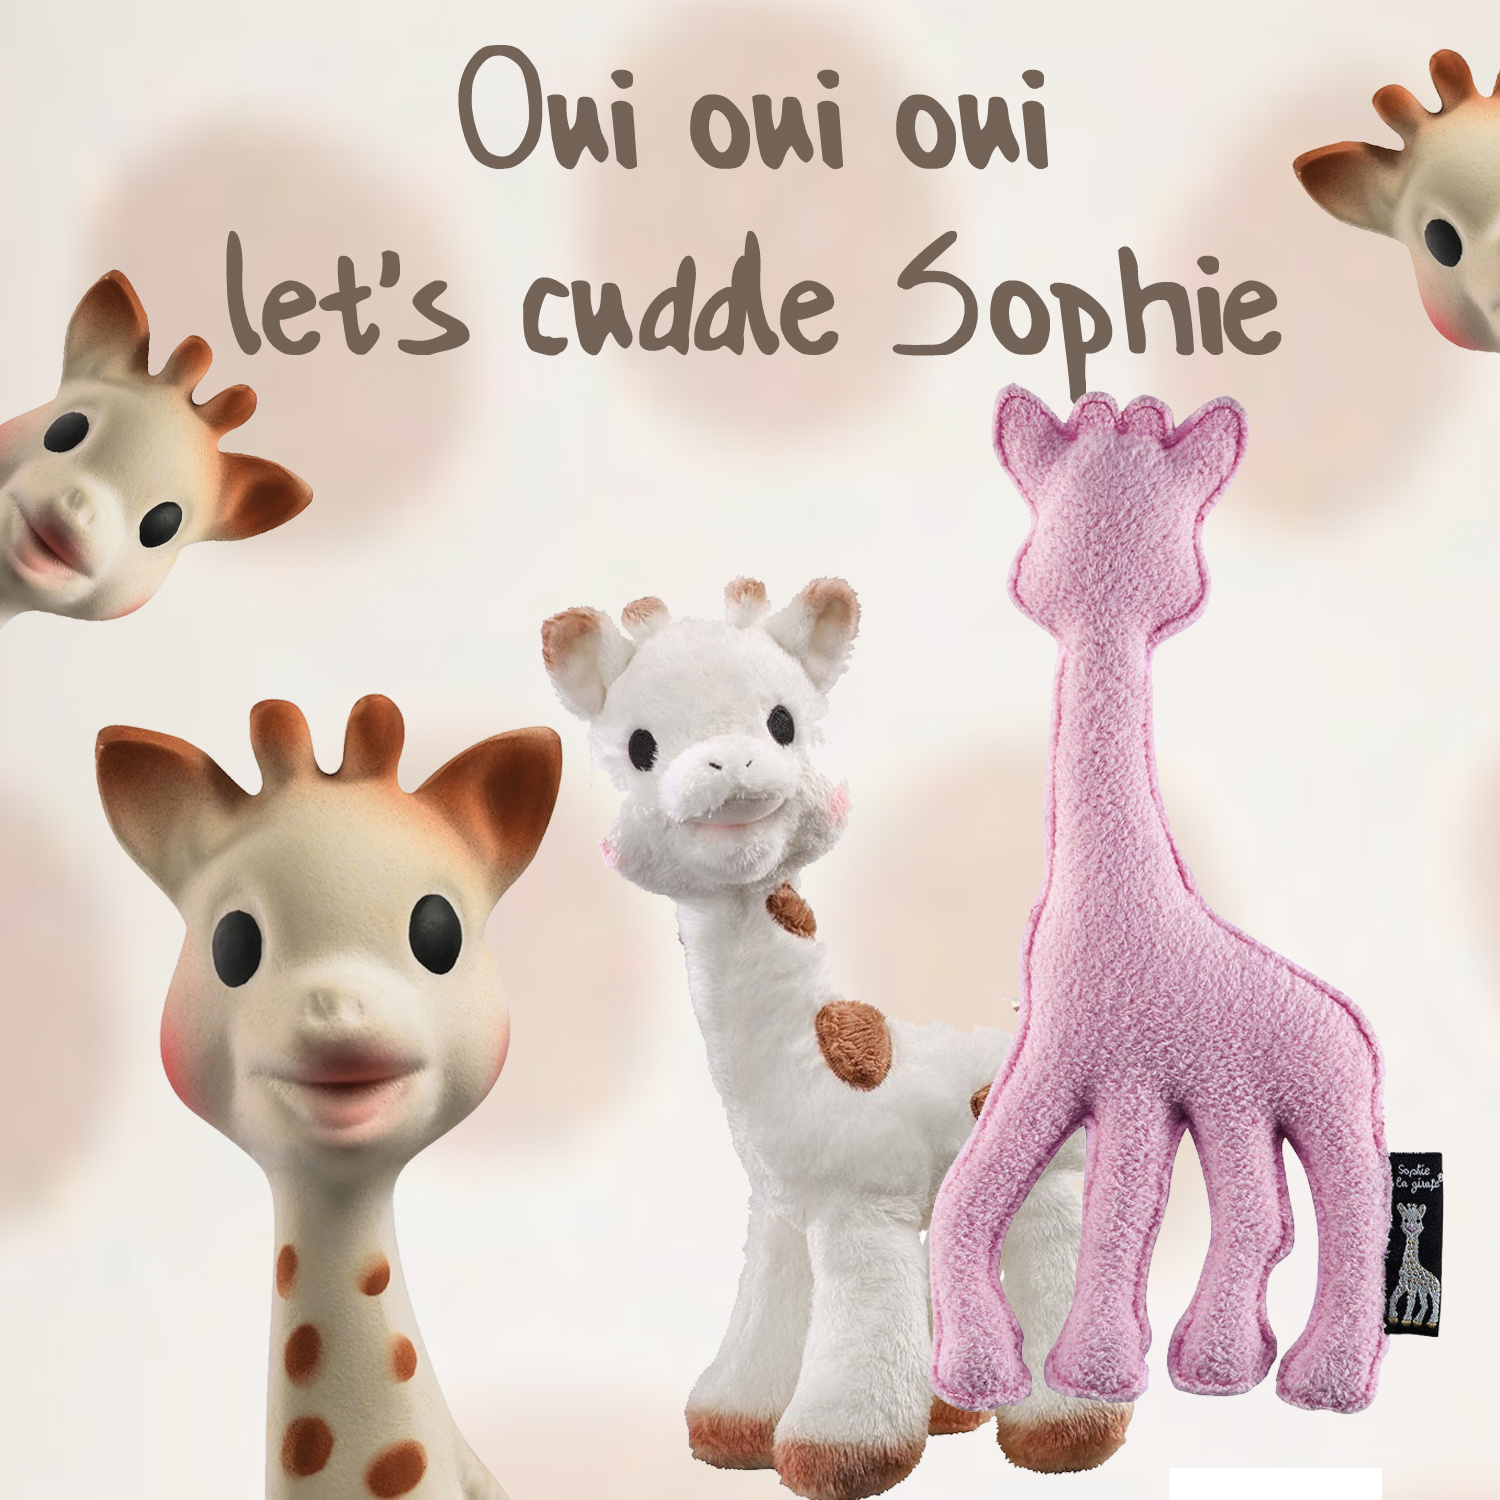 Sophie la girafe / Vulli Vulli / Sophie de giraffe knuffelbeest roze